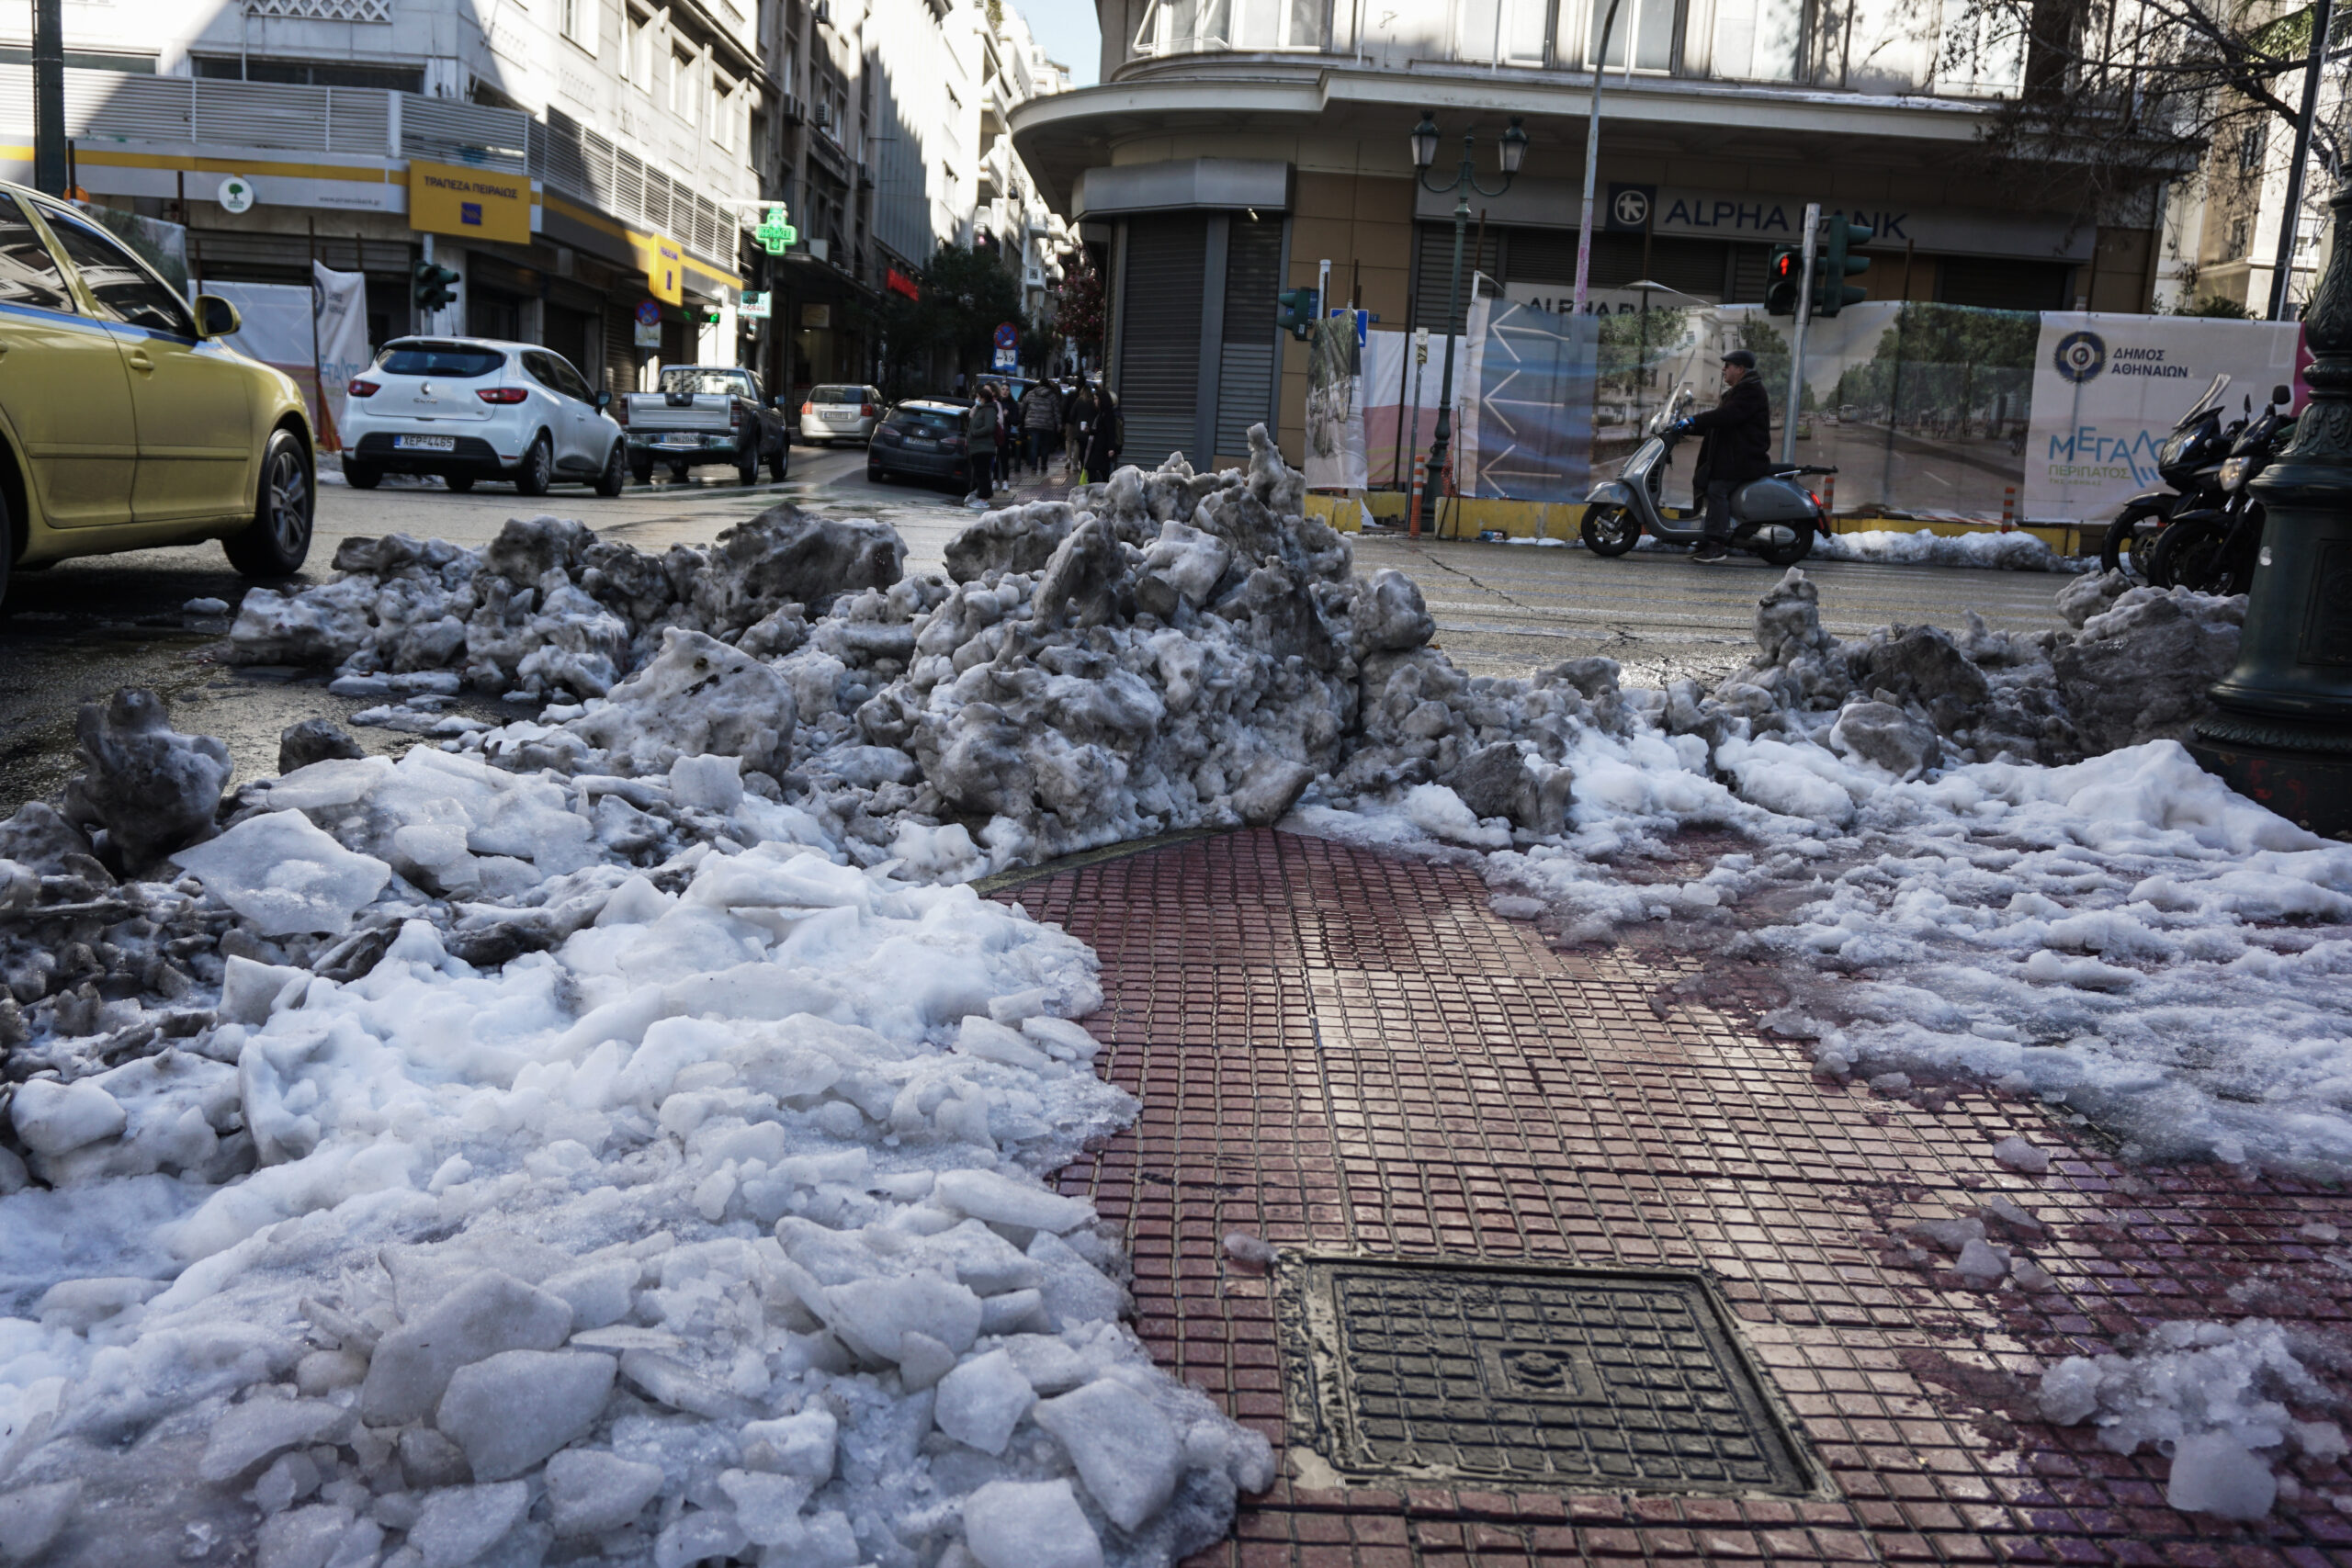 Κακοκαιρία «Μπάρμπαρα»: Σε ποιές περιοχές επιτρέπεται άνοιγμα καταστημάτων στις 10:00 λόγω παγετού